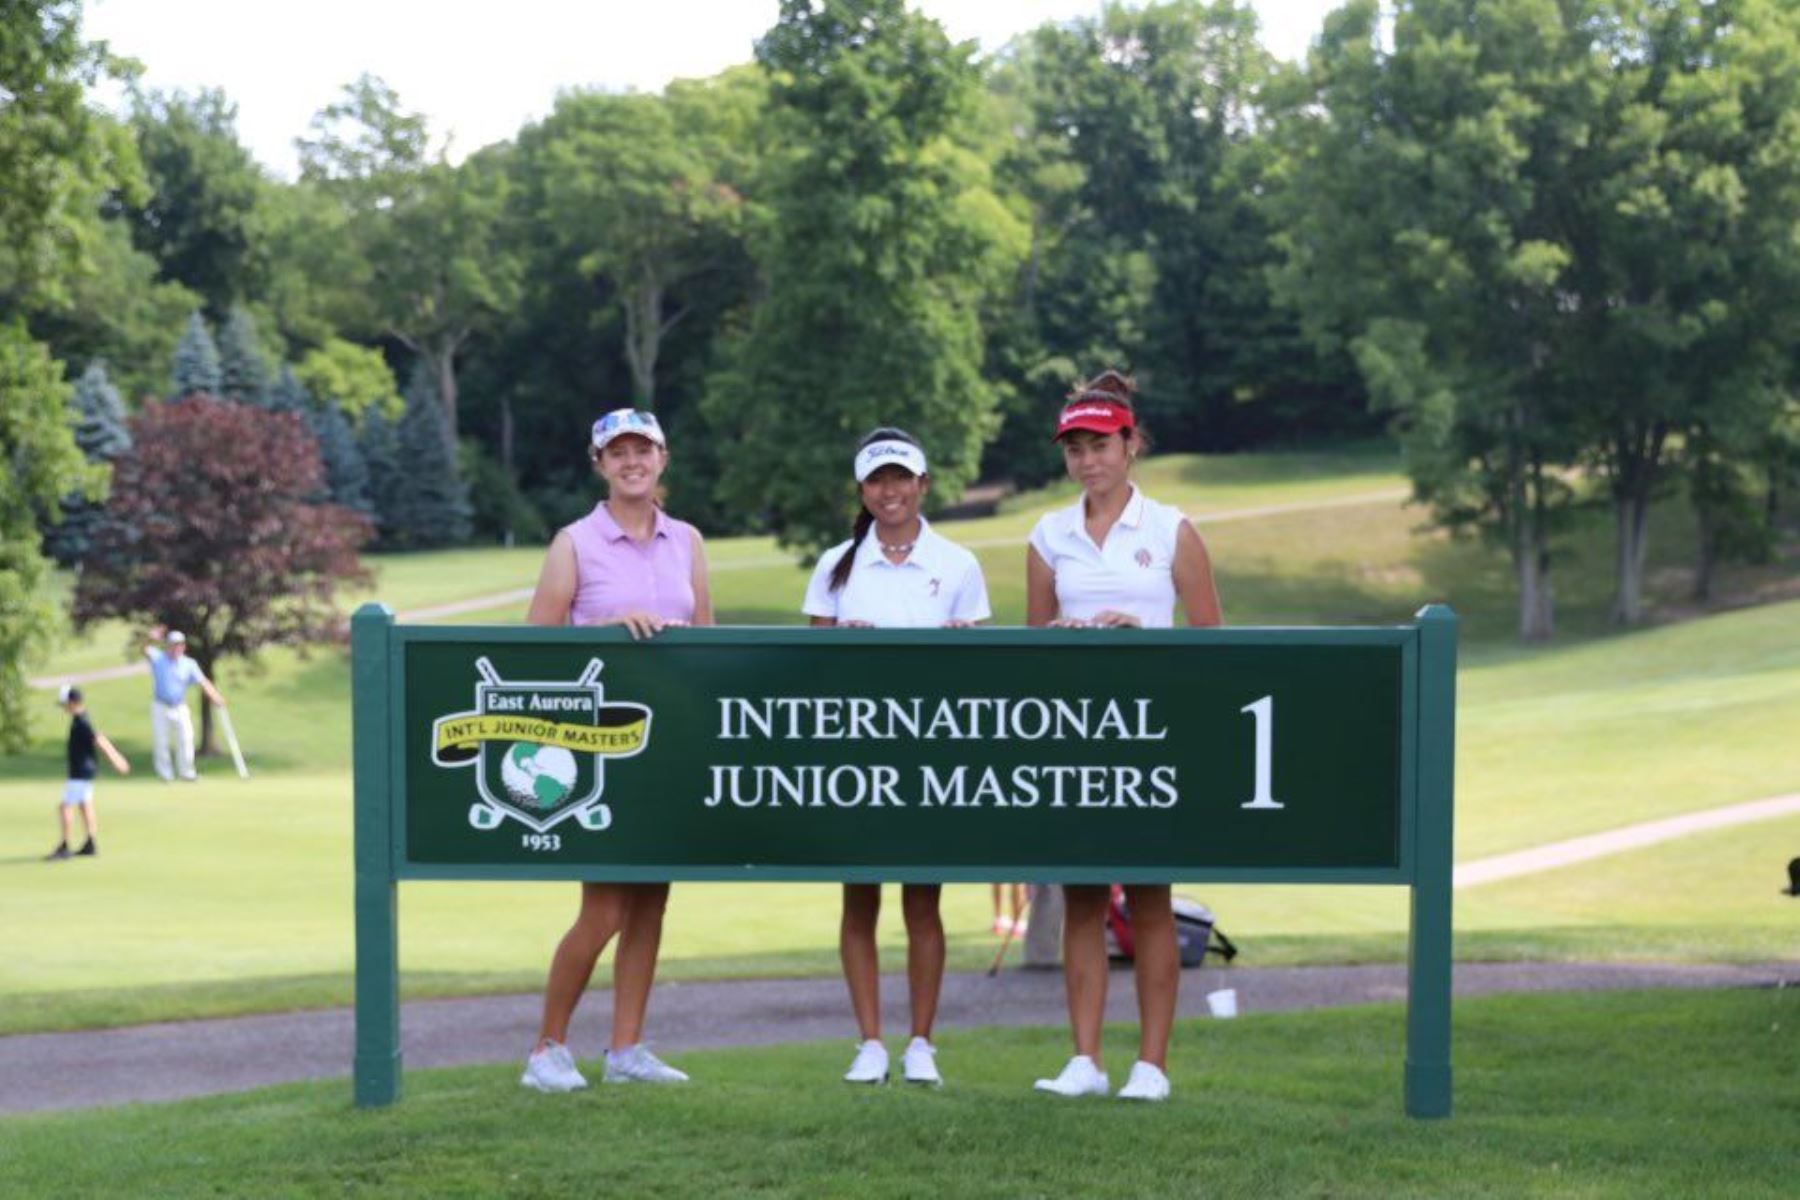 Luisamariana Mesones destaca en las competencias de golf de Estados Unidos